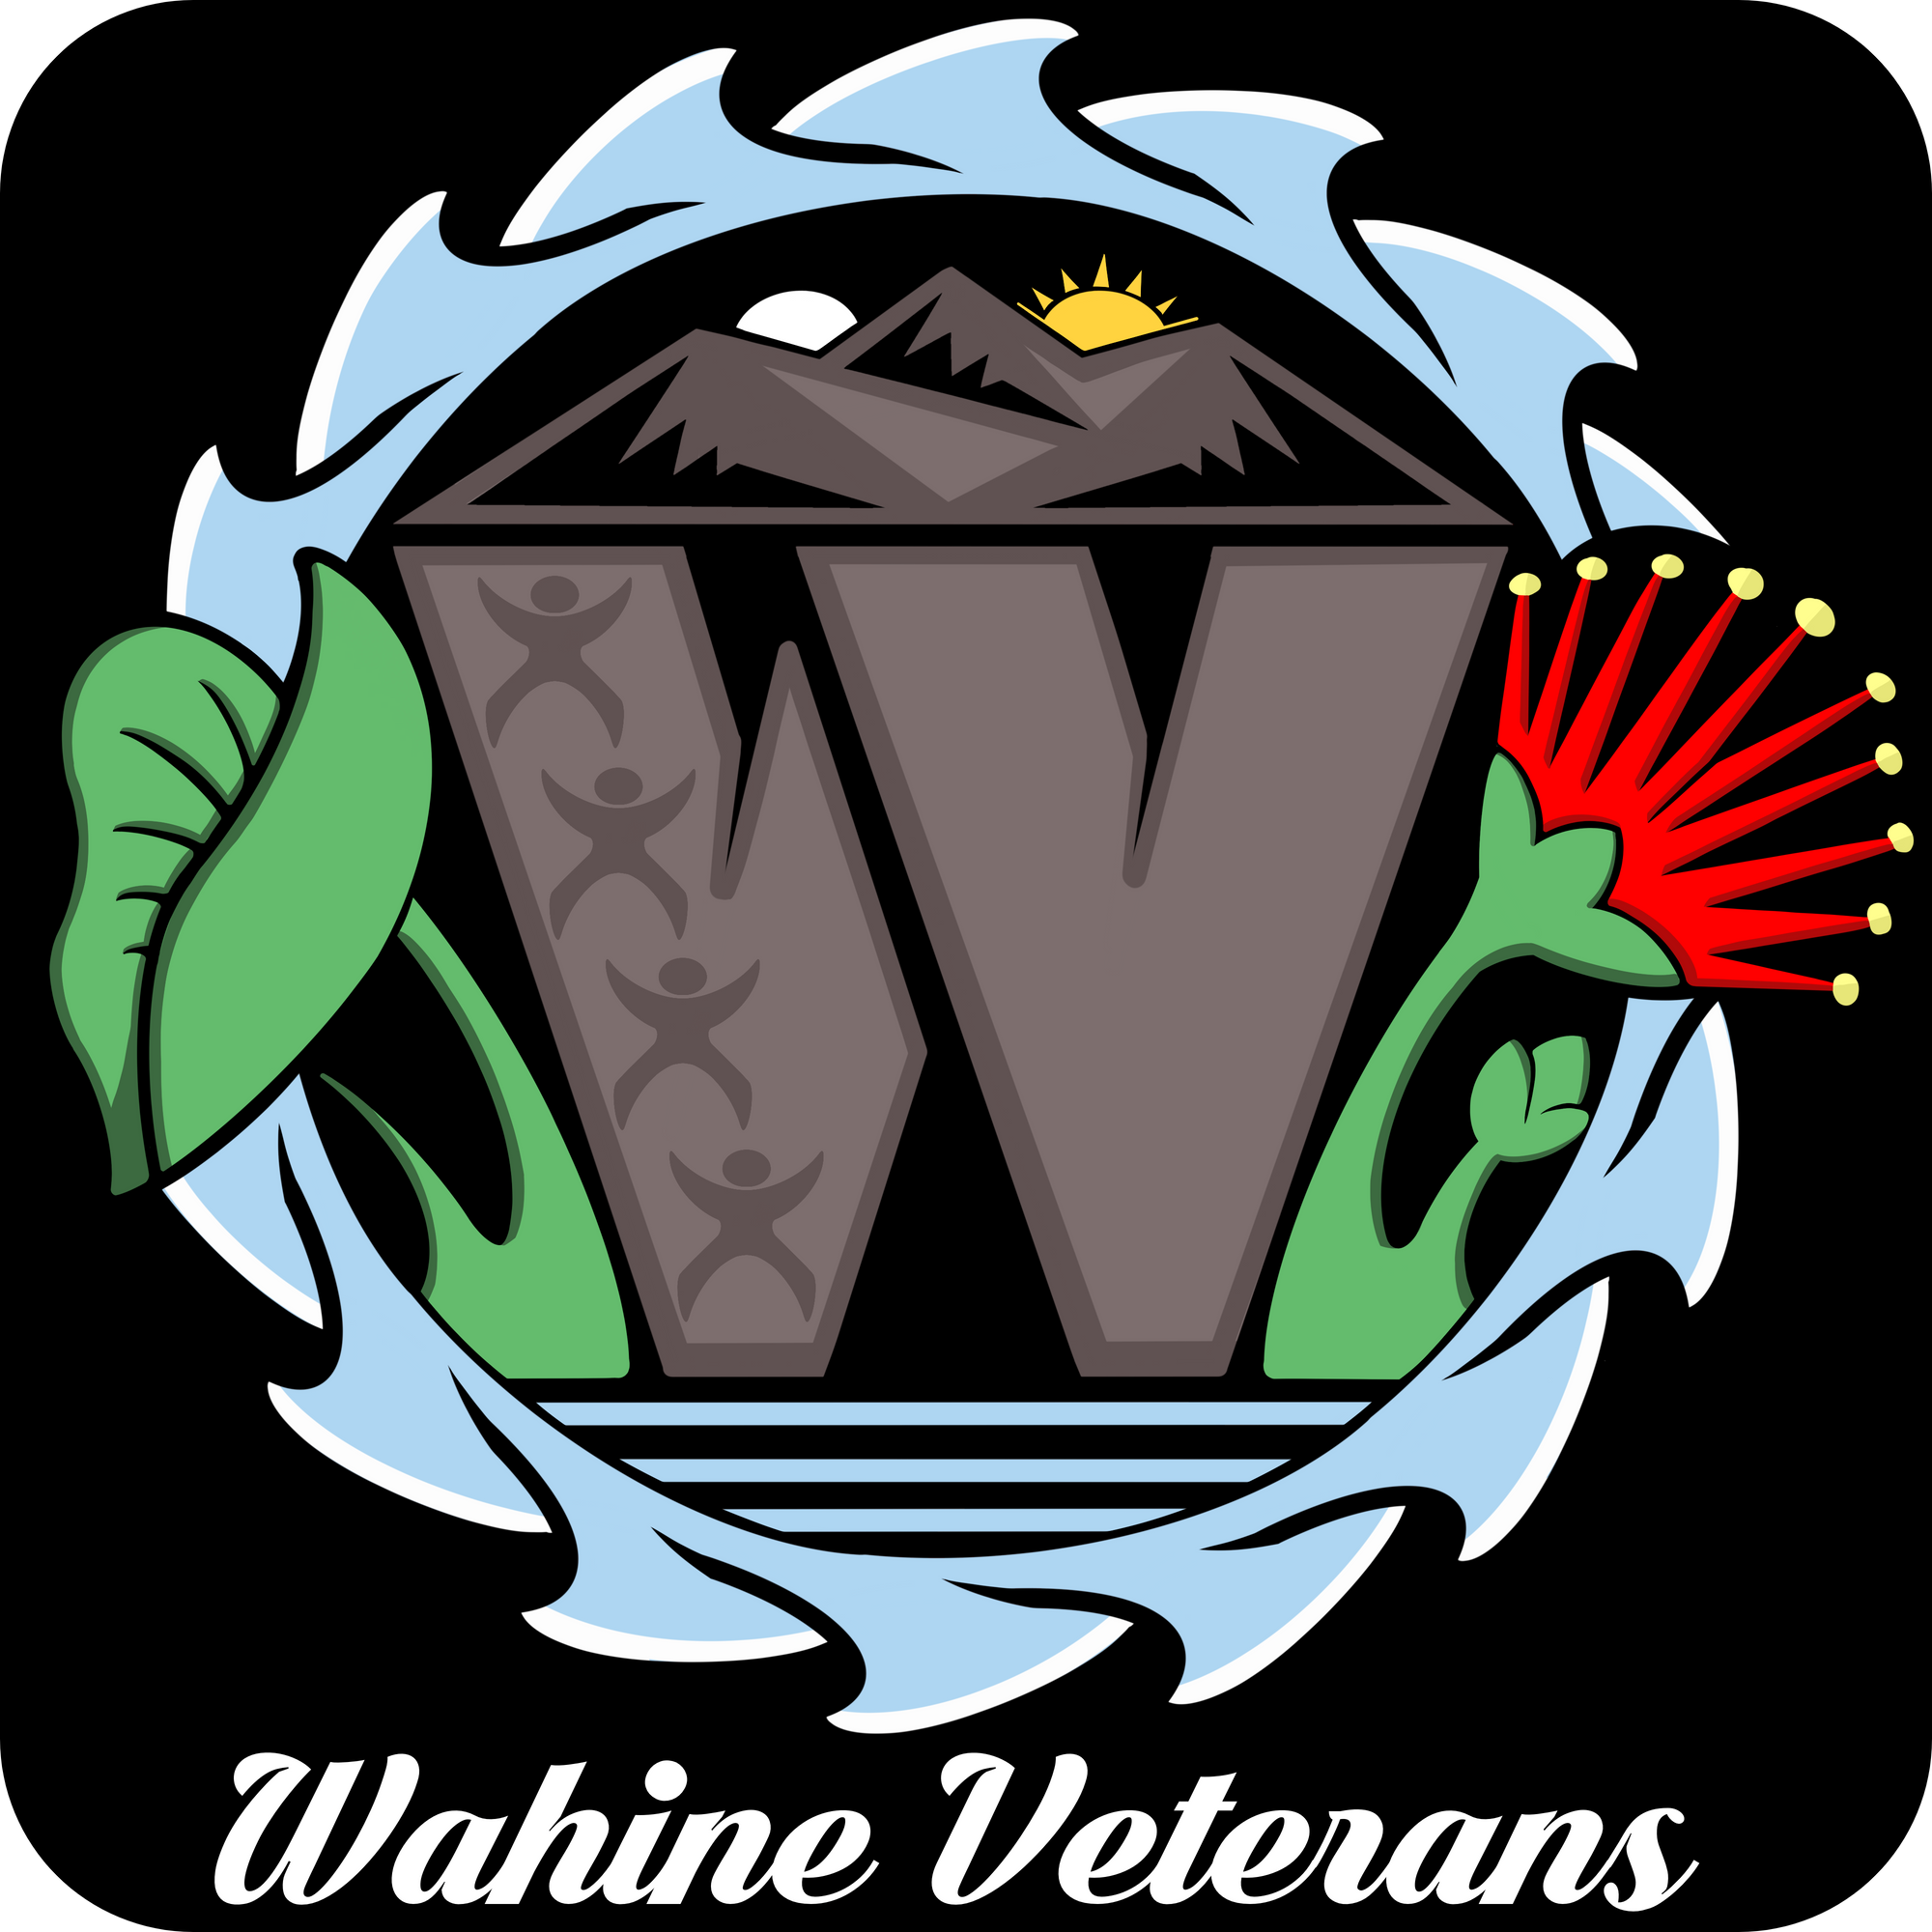 Wahine Veterans